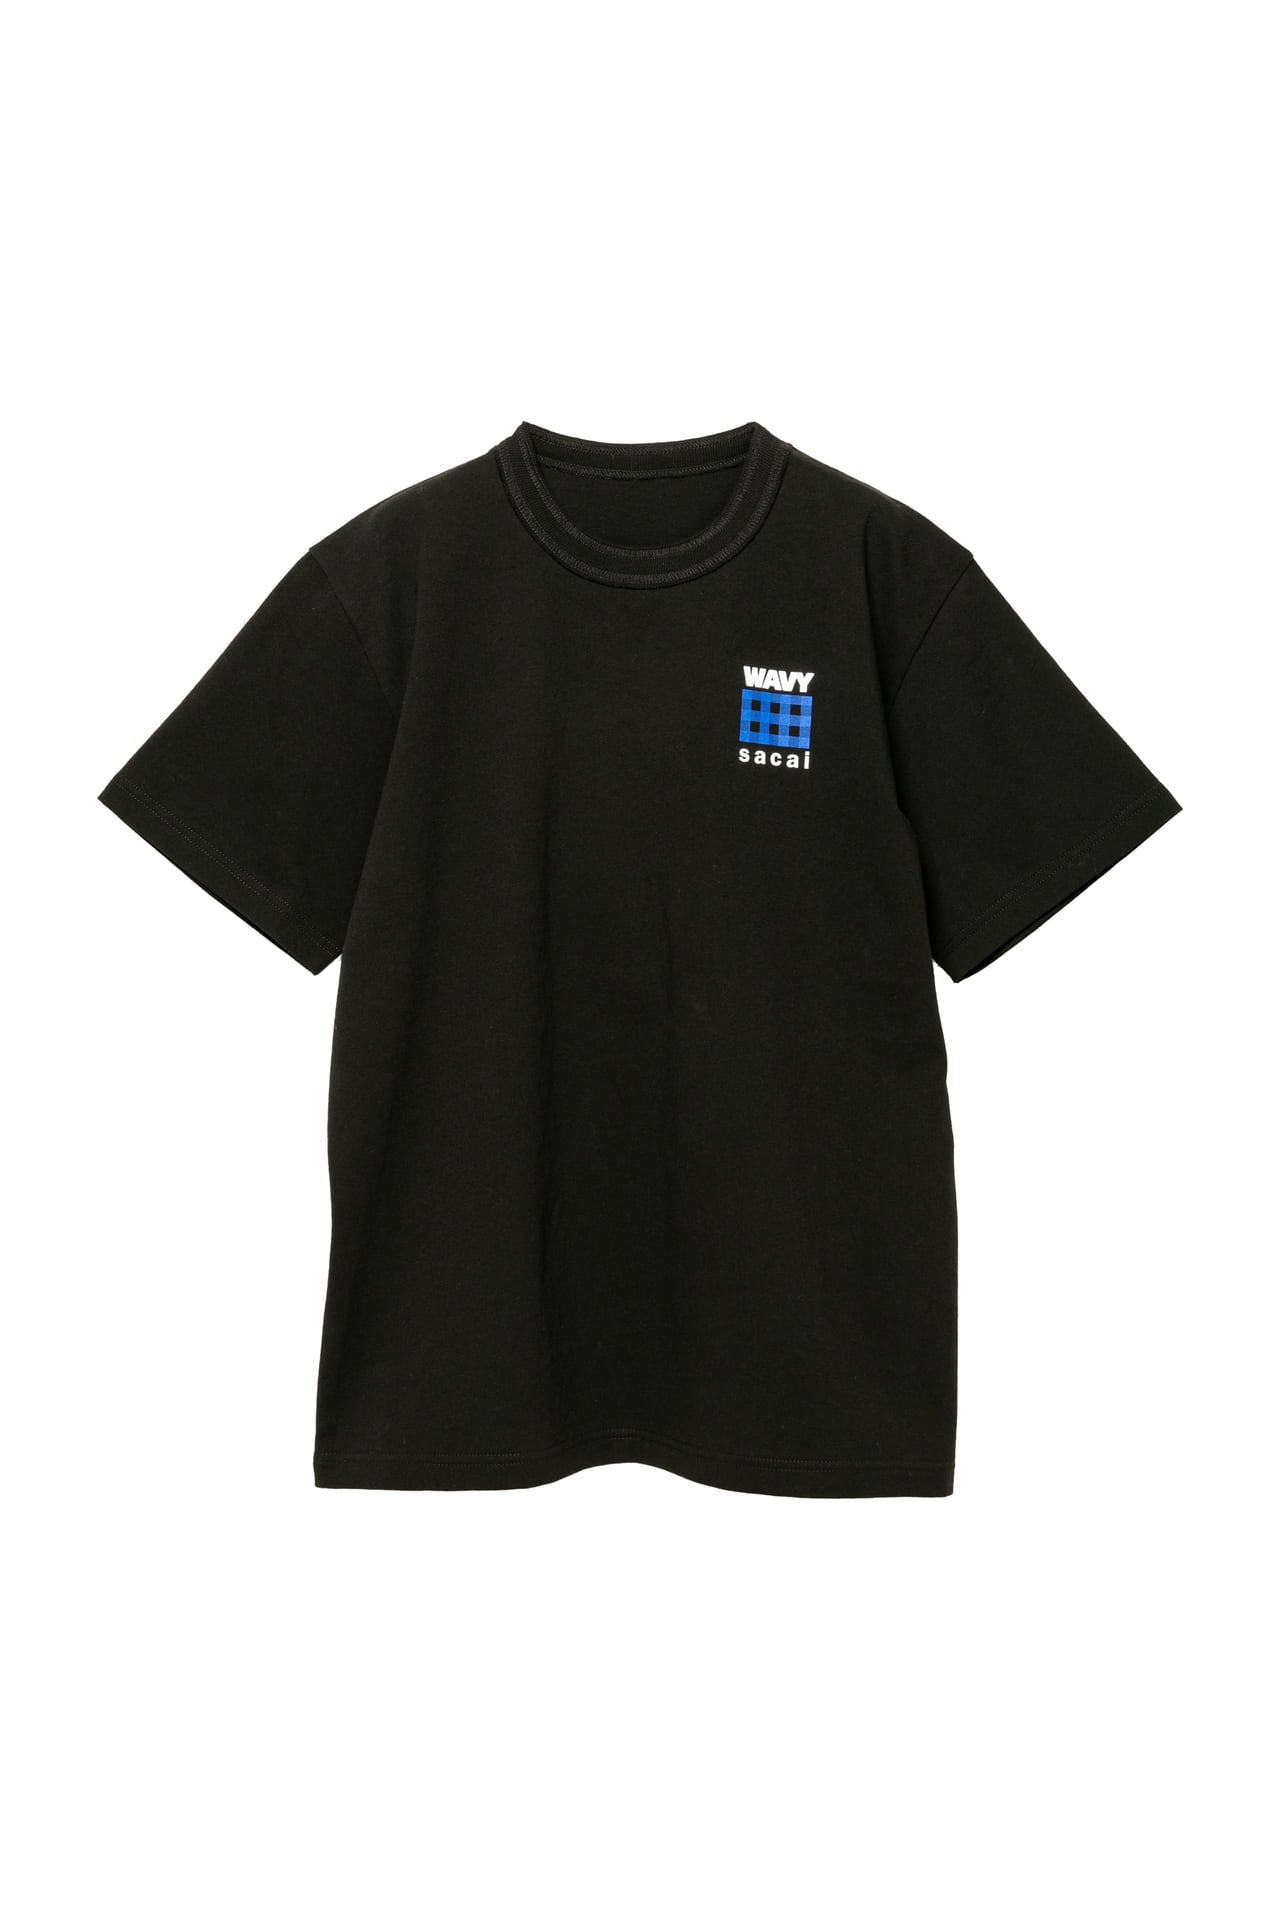 Sacai GASTRO 価格:T シャツ ¥16,500 カラー:ブラック、ホワイト